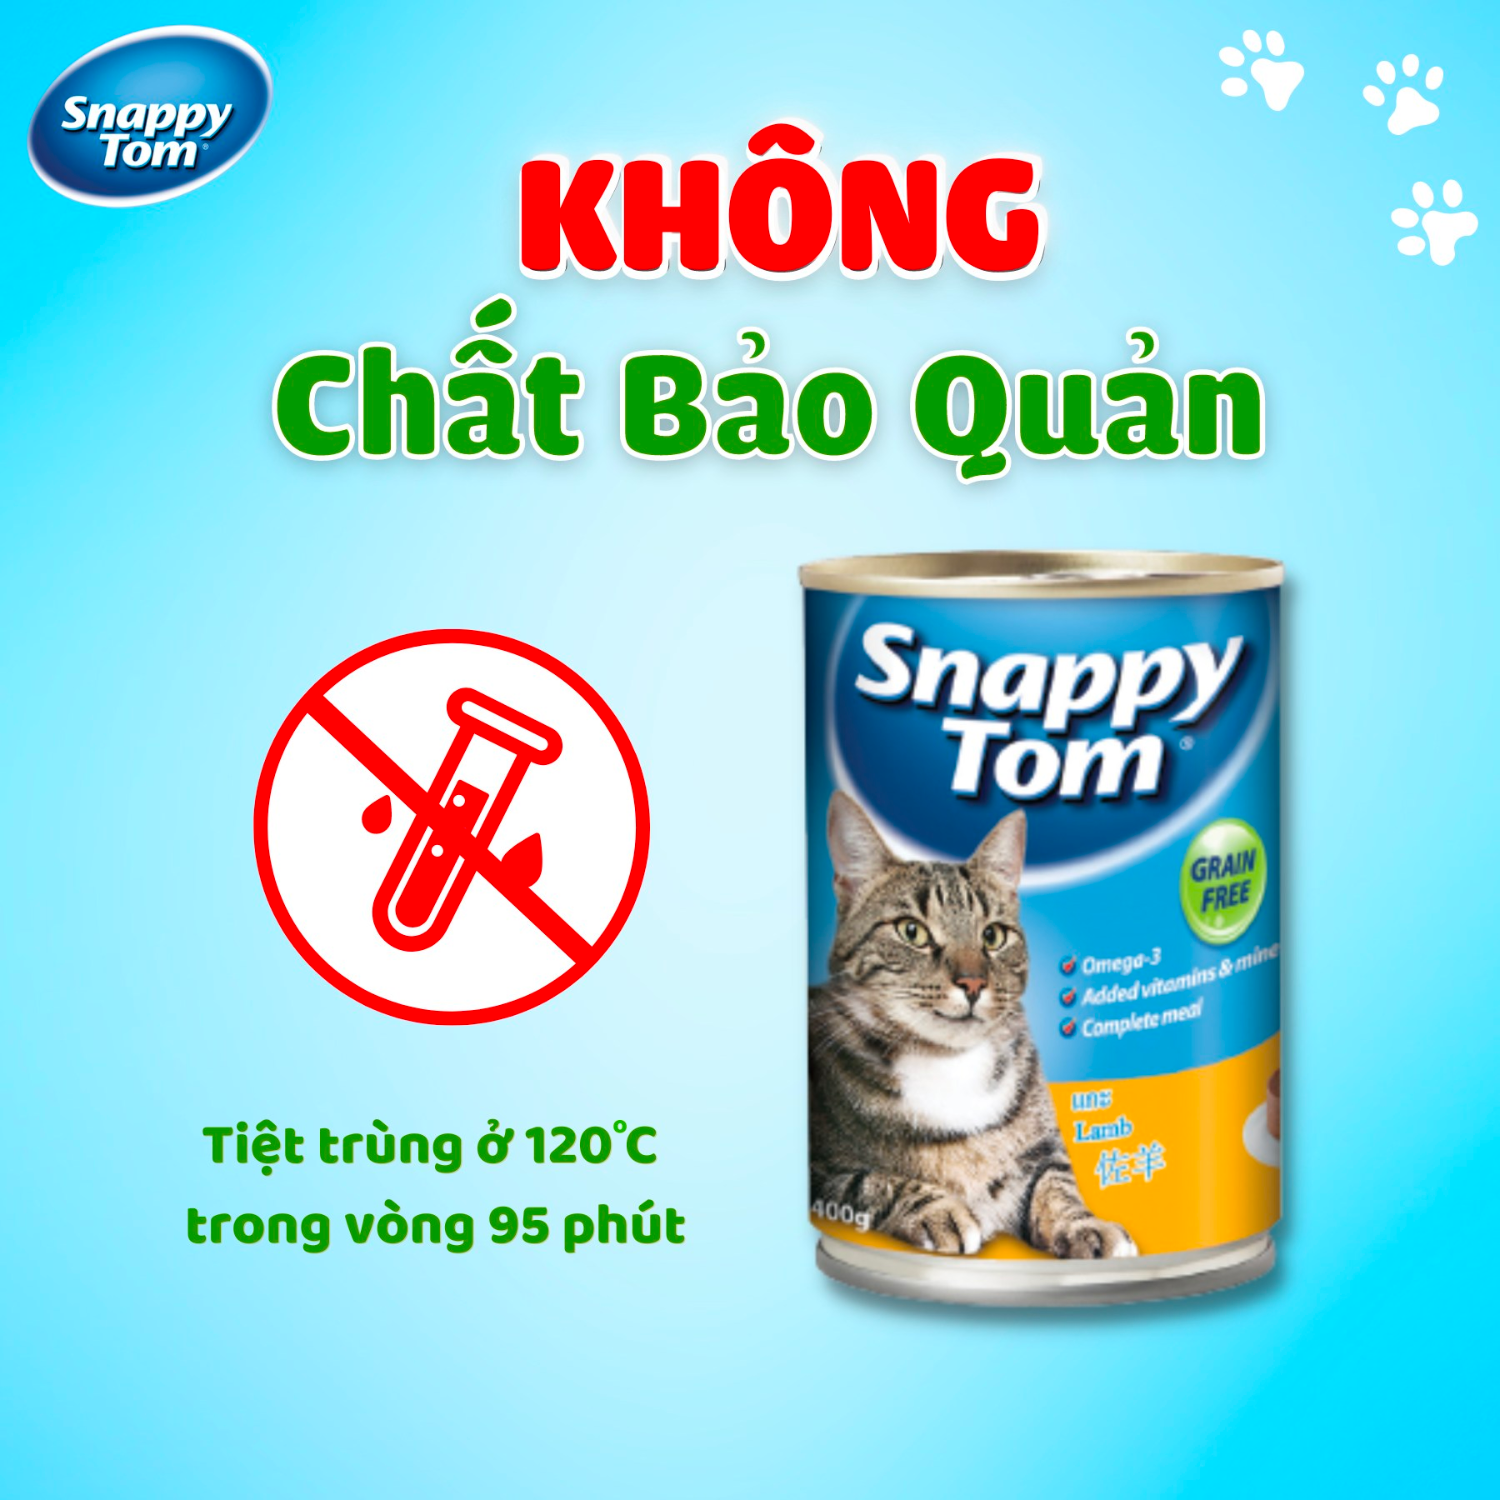 Pate Thức Ăn Ướt Dạng Xay Nhuyễn Snappy Tom Cho Mèo Trưởng Thành - Lon 400g